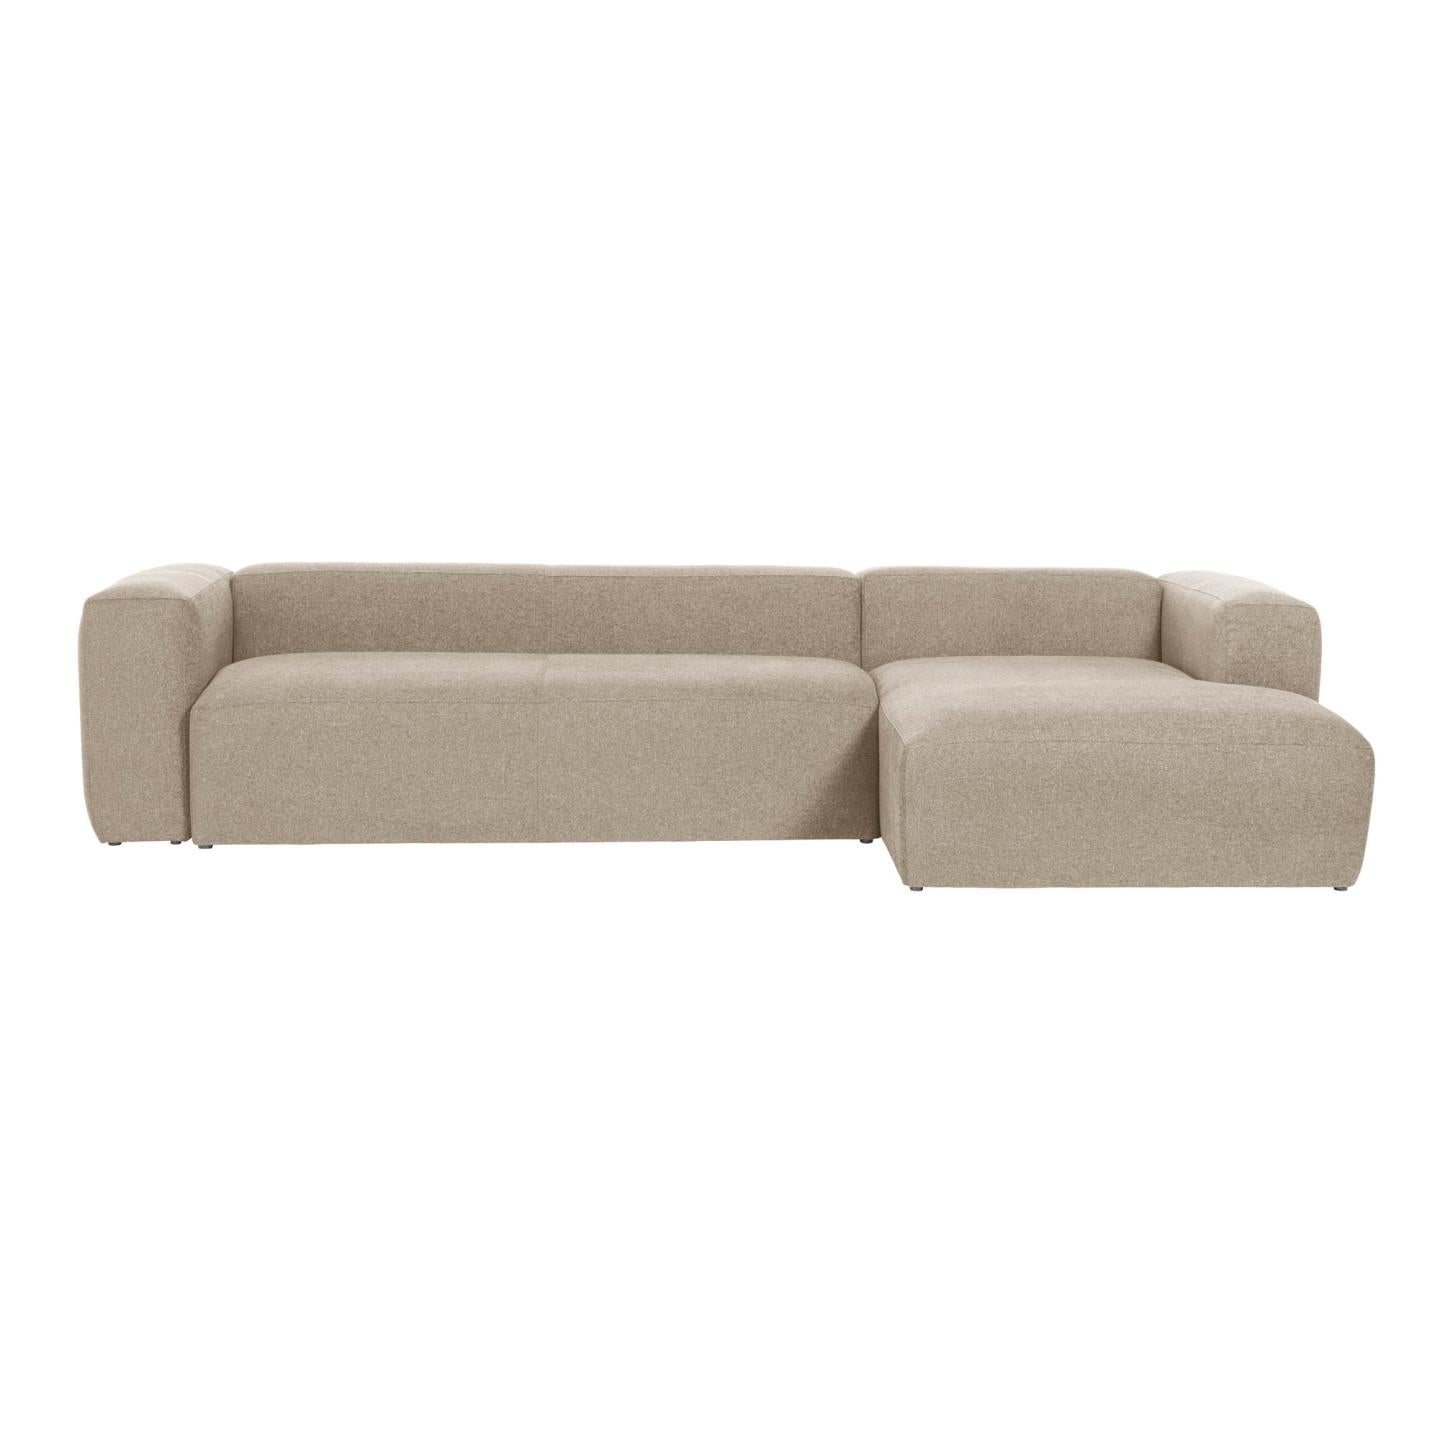 Blok 4 személyes kanapé jobb oldali fekvőfotellel, bézs színben, 330 cm